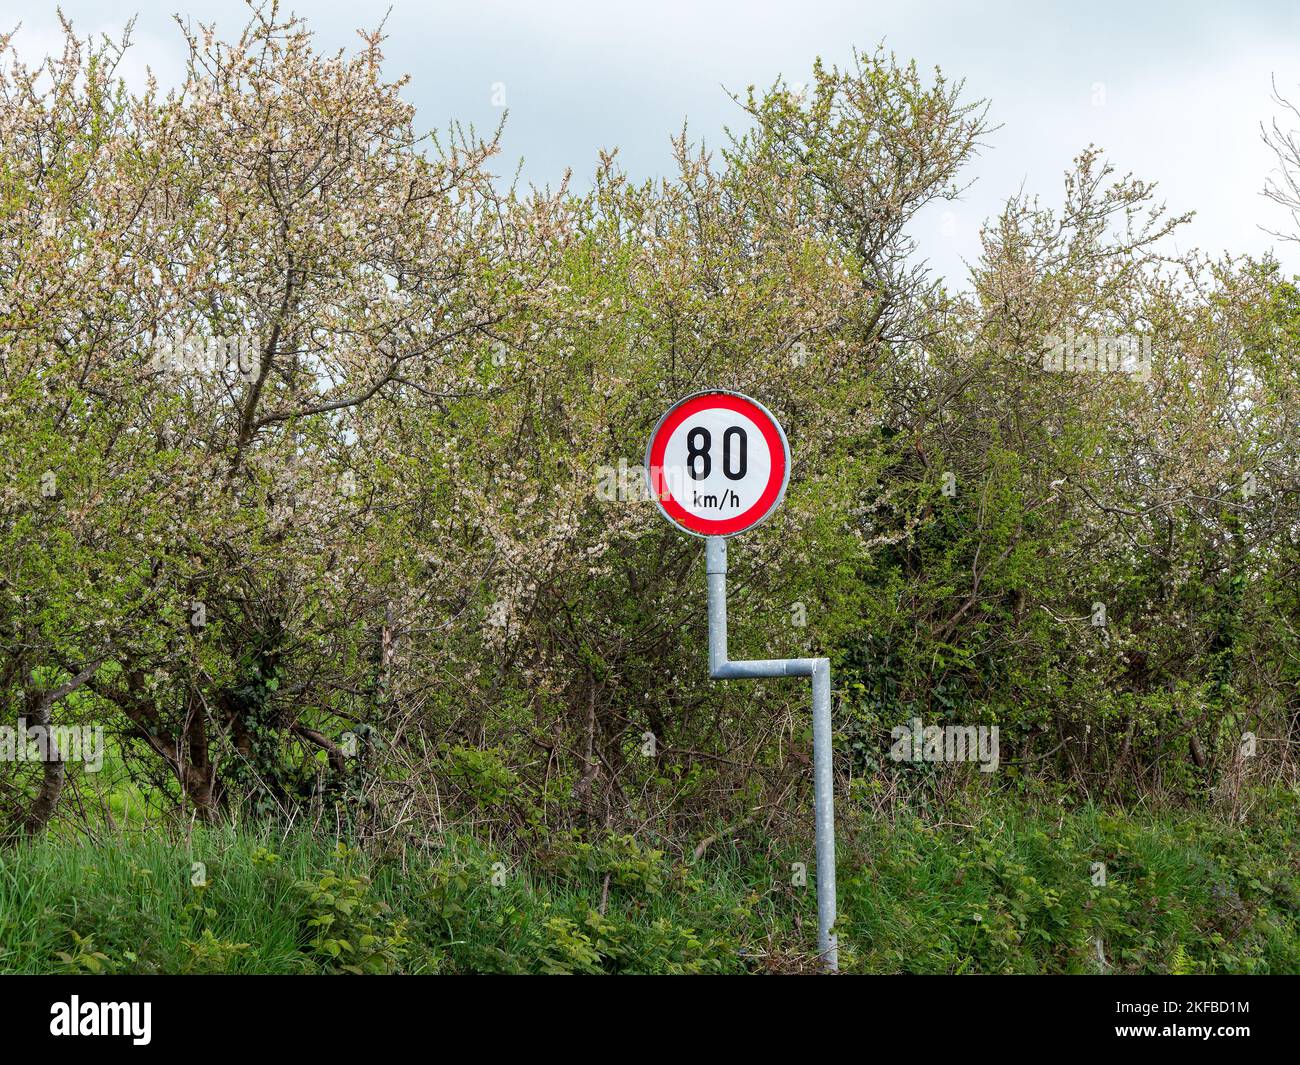 Rundschild Warnung über Geschwindigkeitsbegrenzungen in der Nähe von Bäumen. Die Geschwindigkeitsbegrenzung beträgt 80 km h. Schild in der Nähe von grünen Bäumen Stockfoto